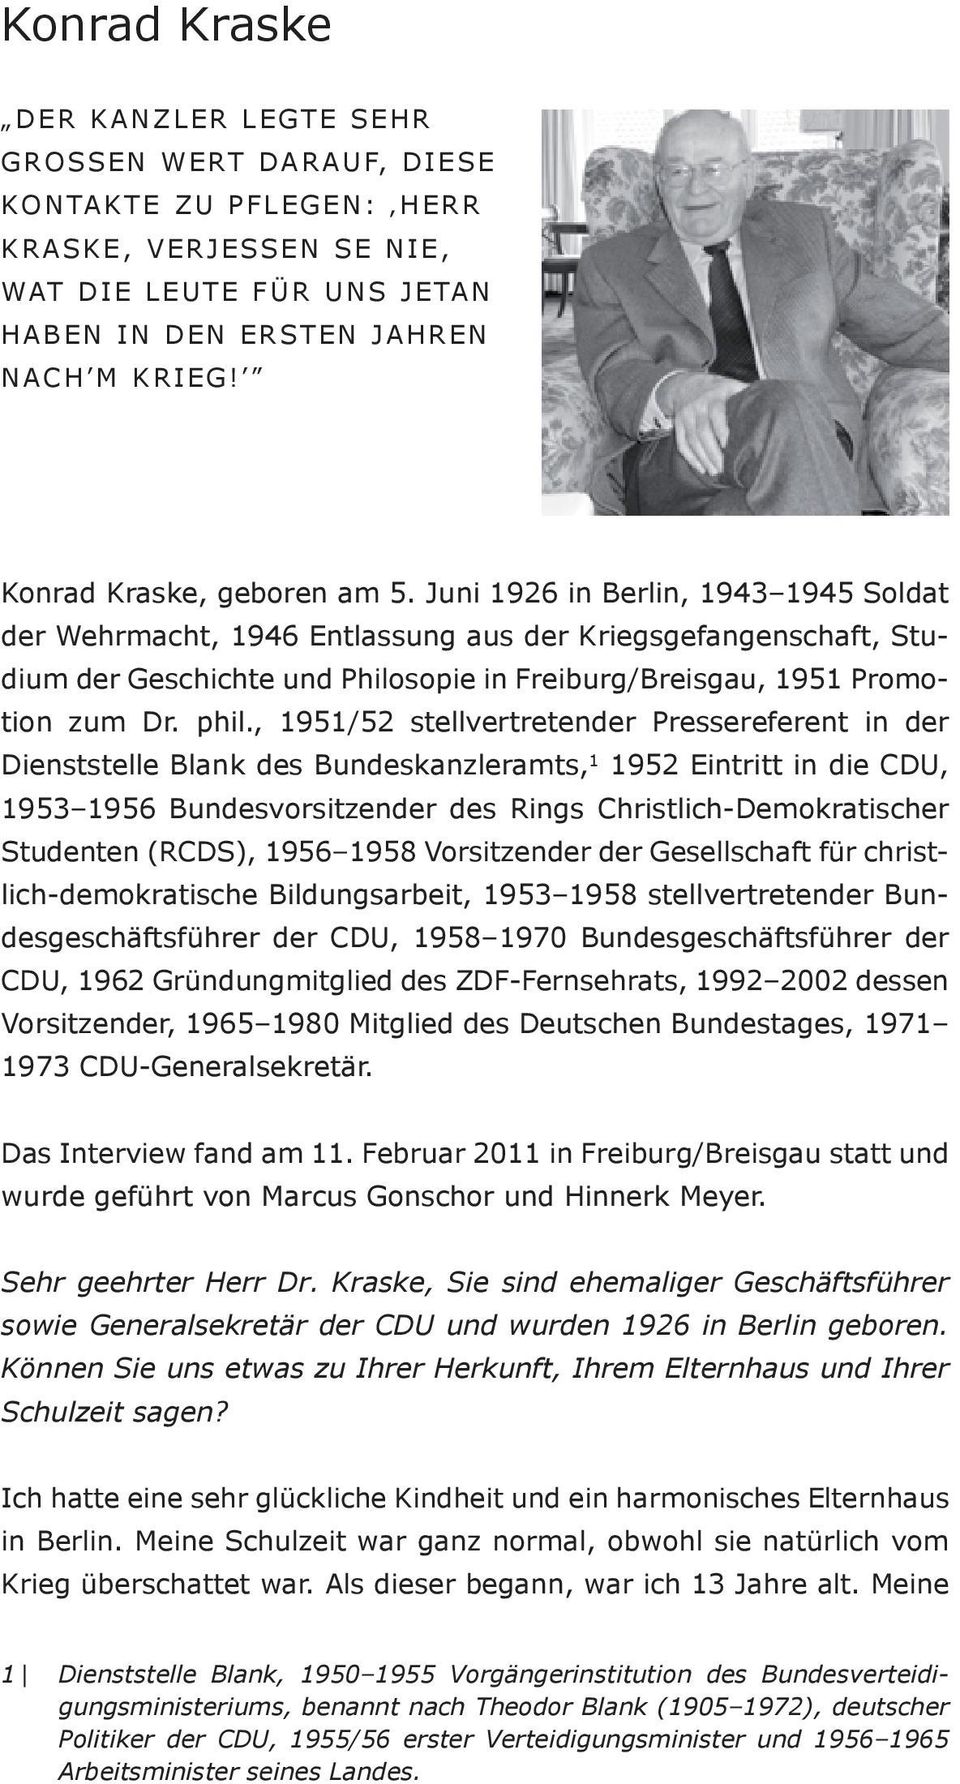 Juni 1926 in Berlin, 1943 1945 Soldat der Wehrmacht, 1946 Entlassung aus der Kriegsgefangenschaft, Studium der Geschichte und Philosopie in Freiburg/Breisgau, 1951 Promotion zum Dr. phil.